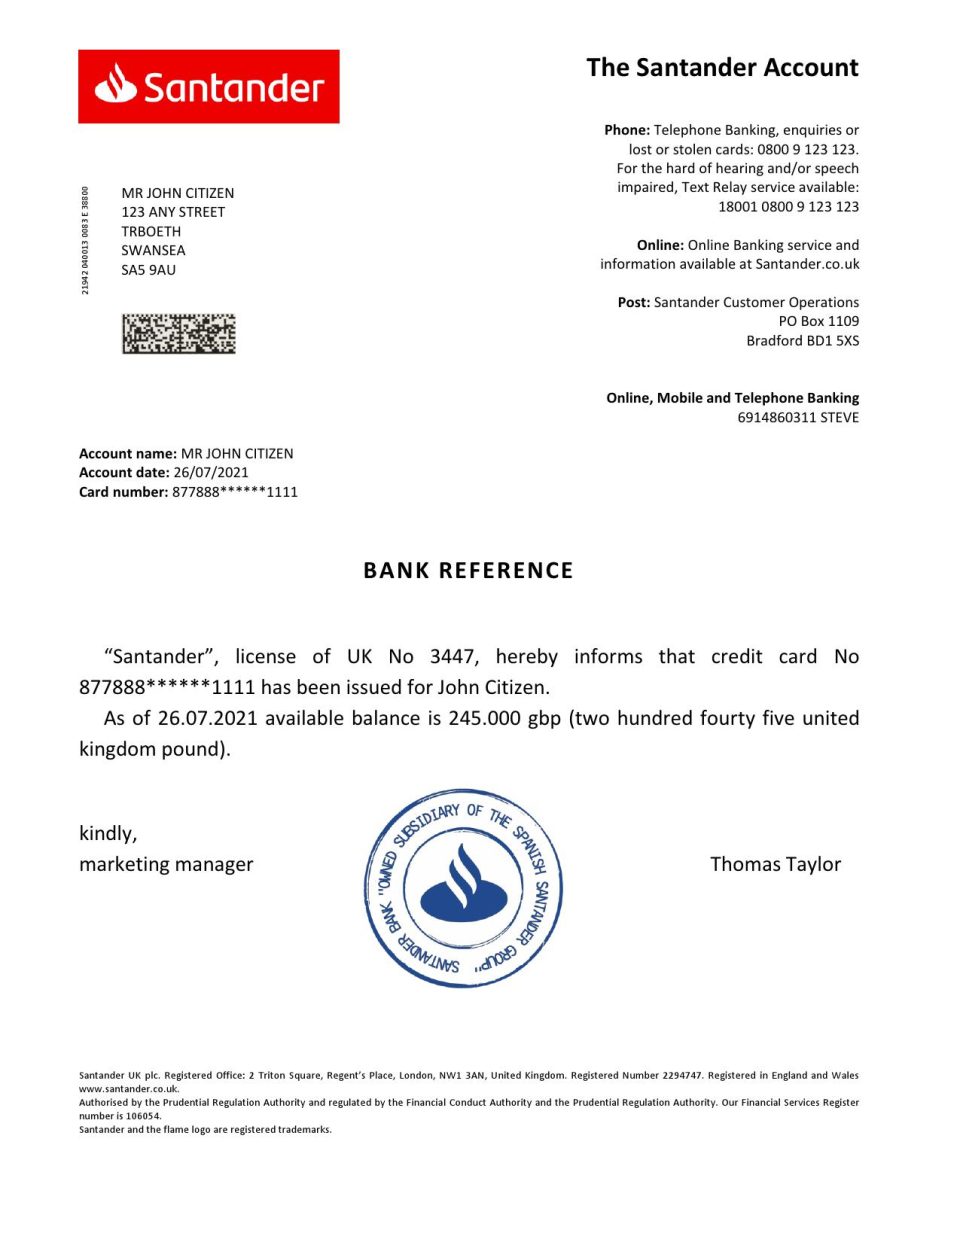 Download United Kingdom Santander Bank Reference Letter Templates | Editable Word